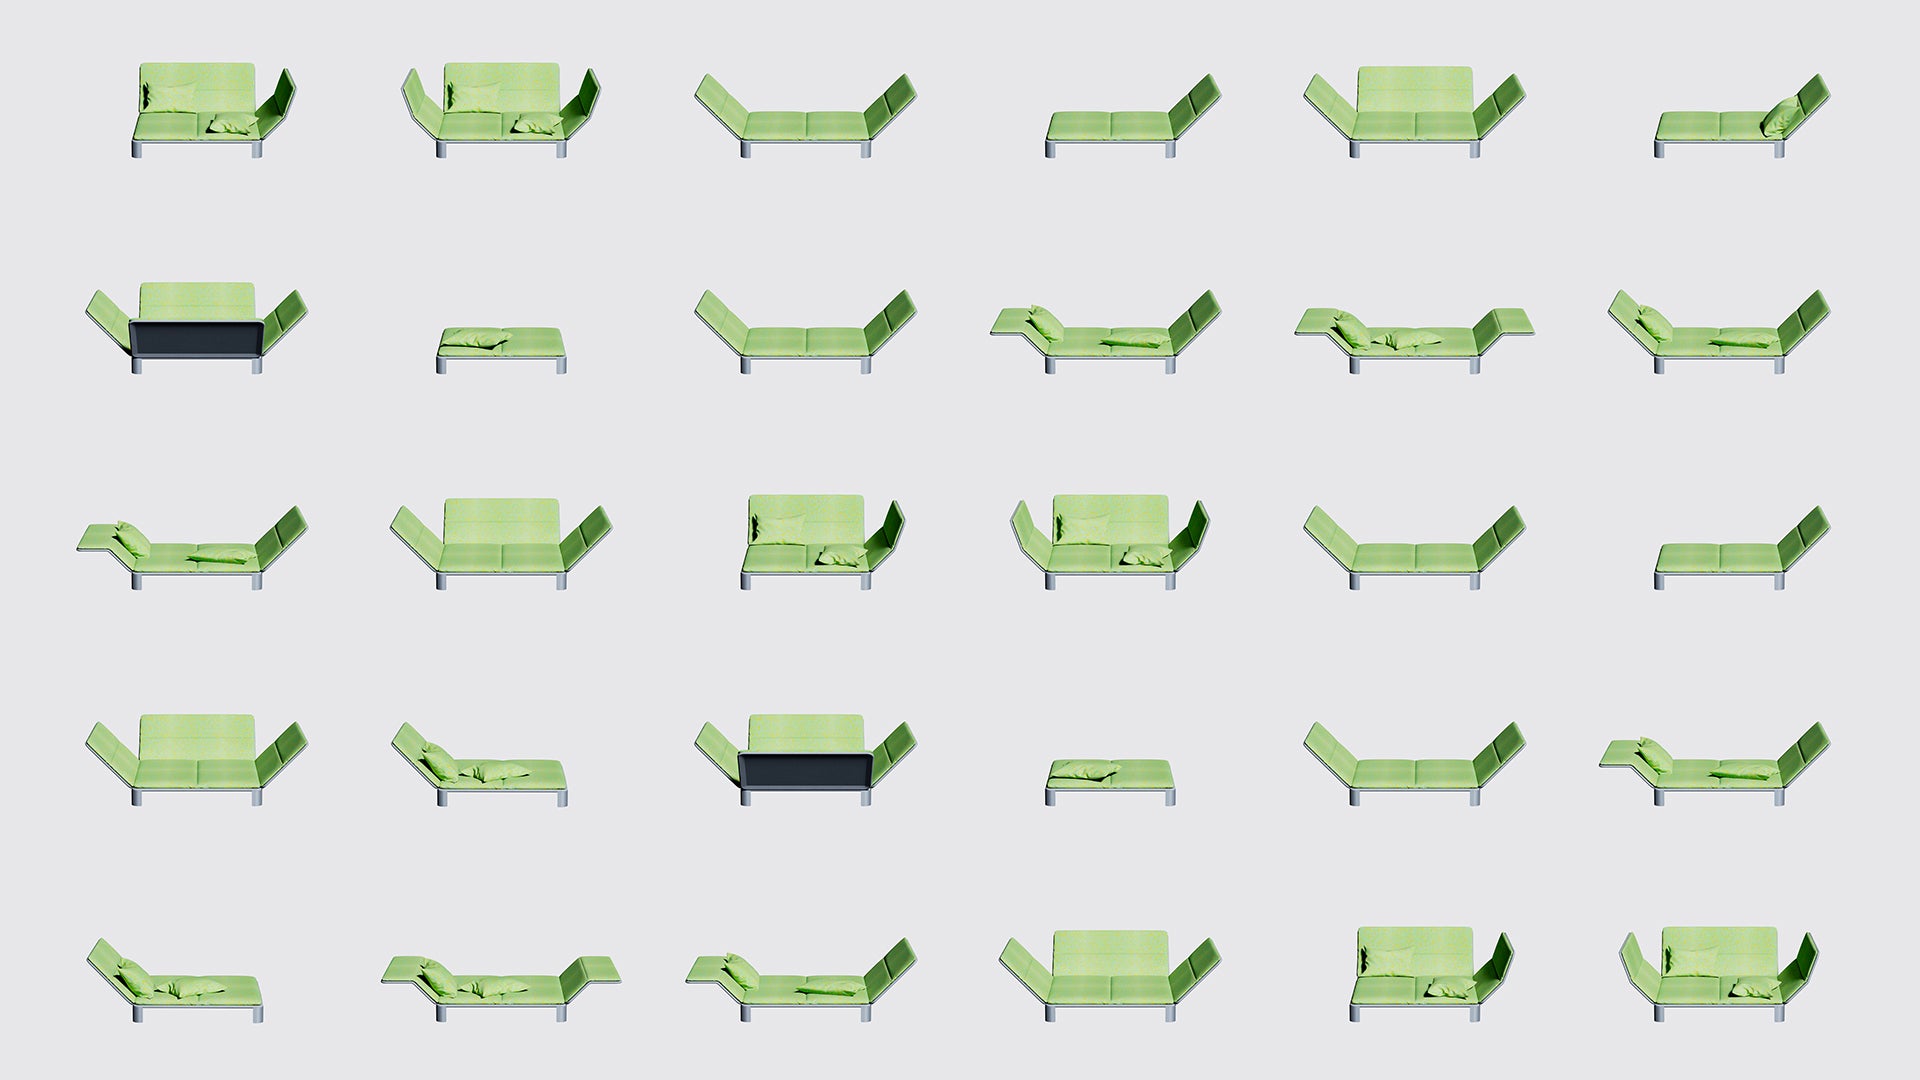 شبكة من الترتيبات المختلفة لمكونات Couch in an Envelope المختلفة.